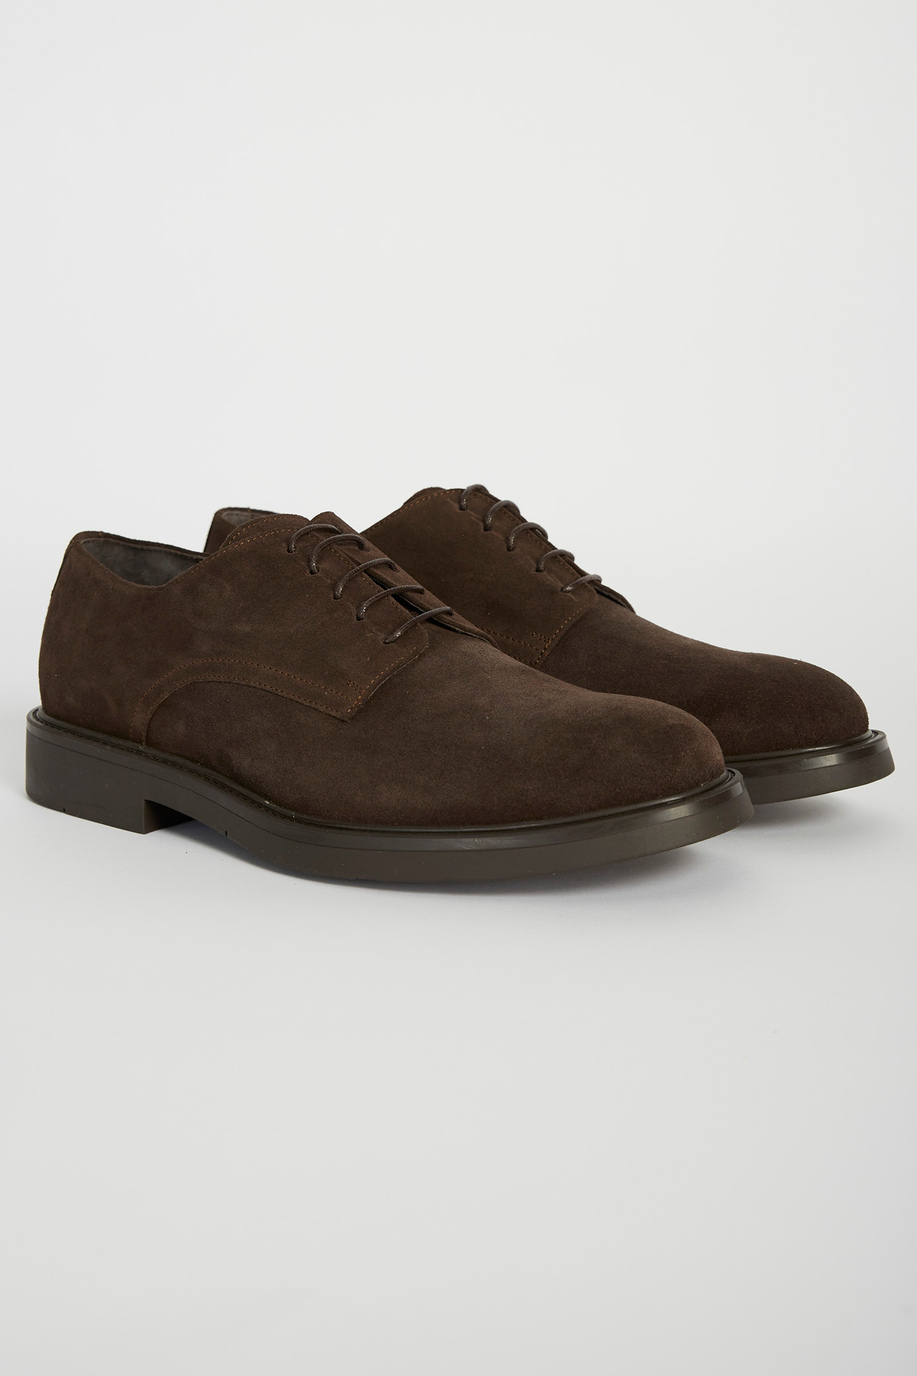 Classic leather shoe - Accessories | La Martina - Official Online Shop